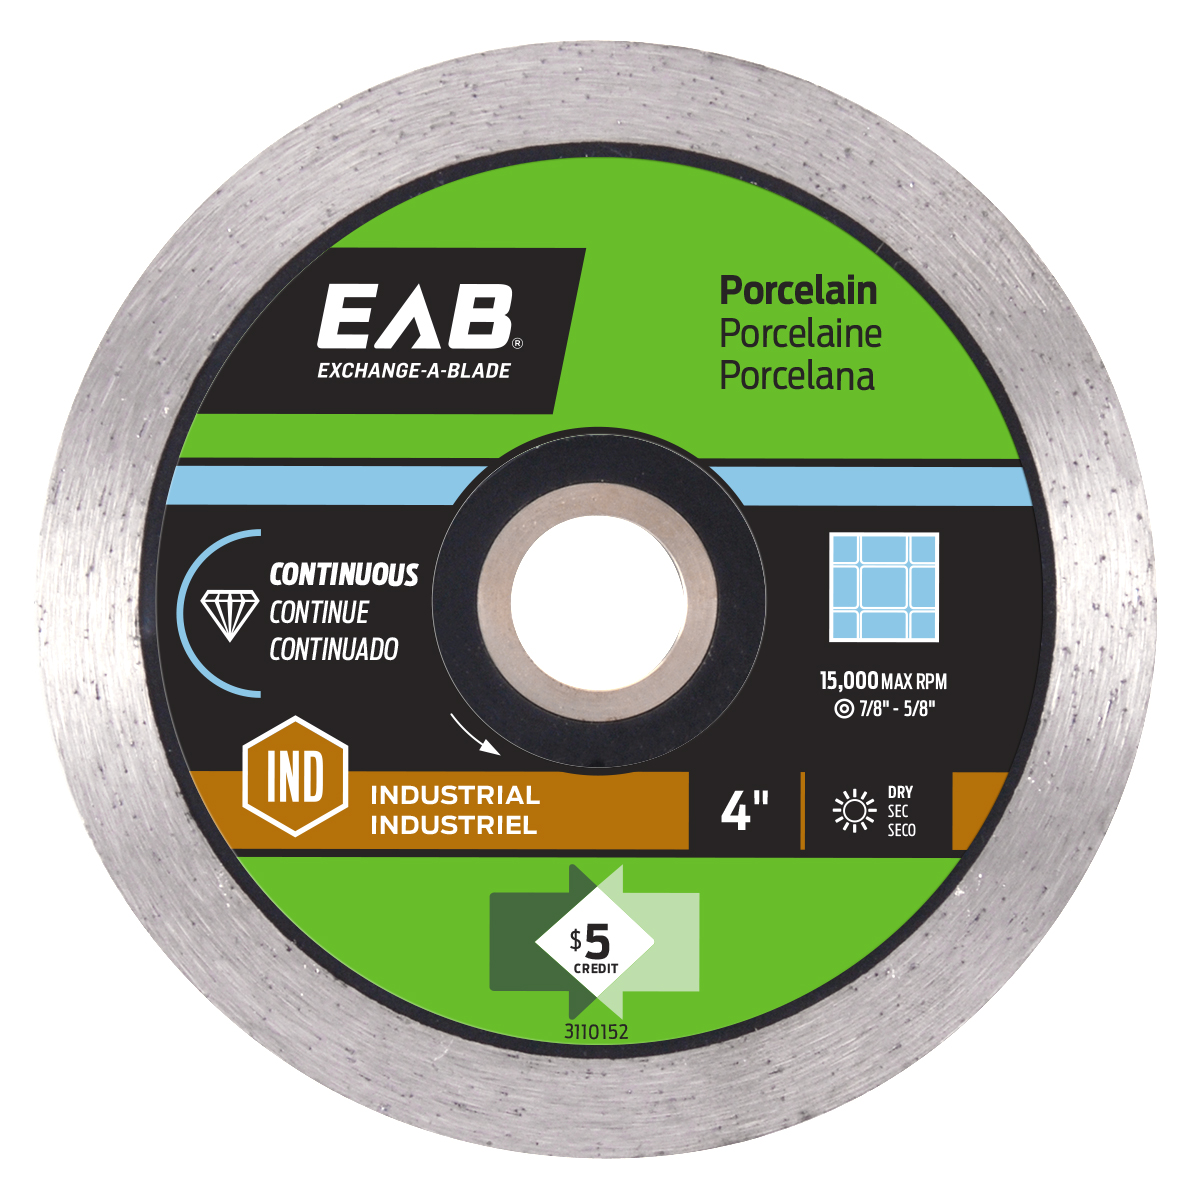 EAB (3110152) product